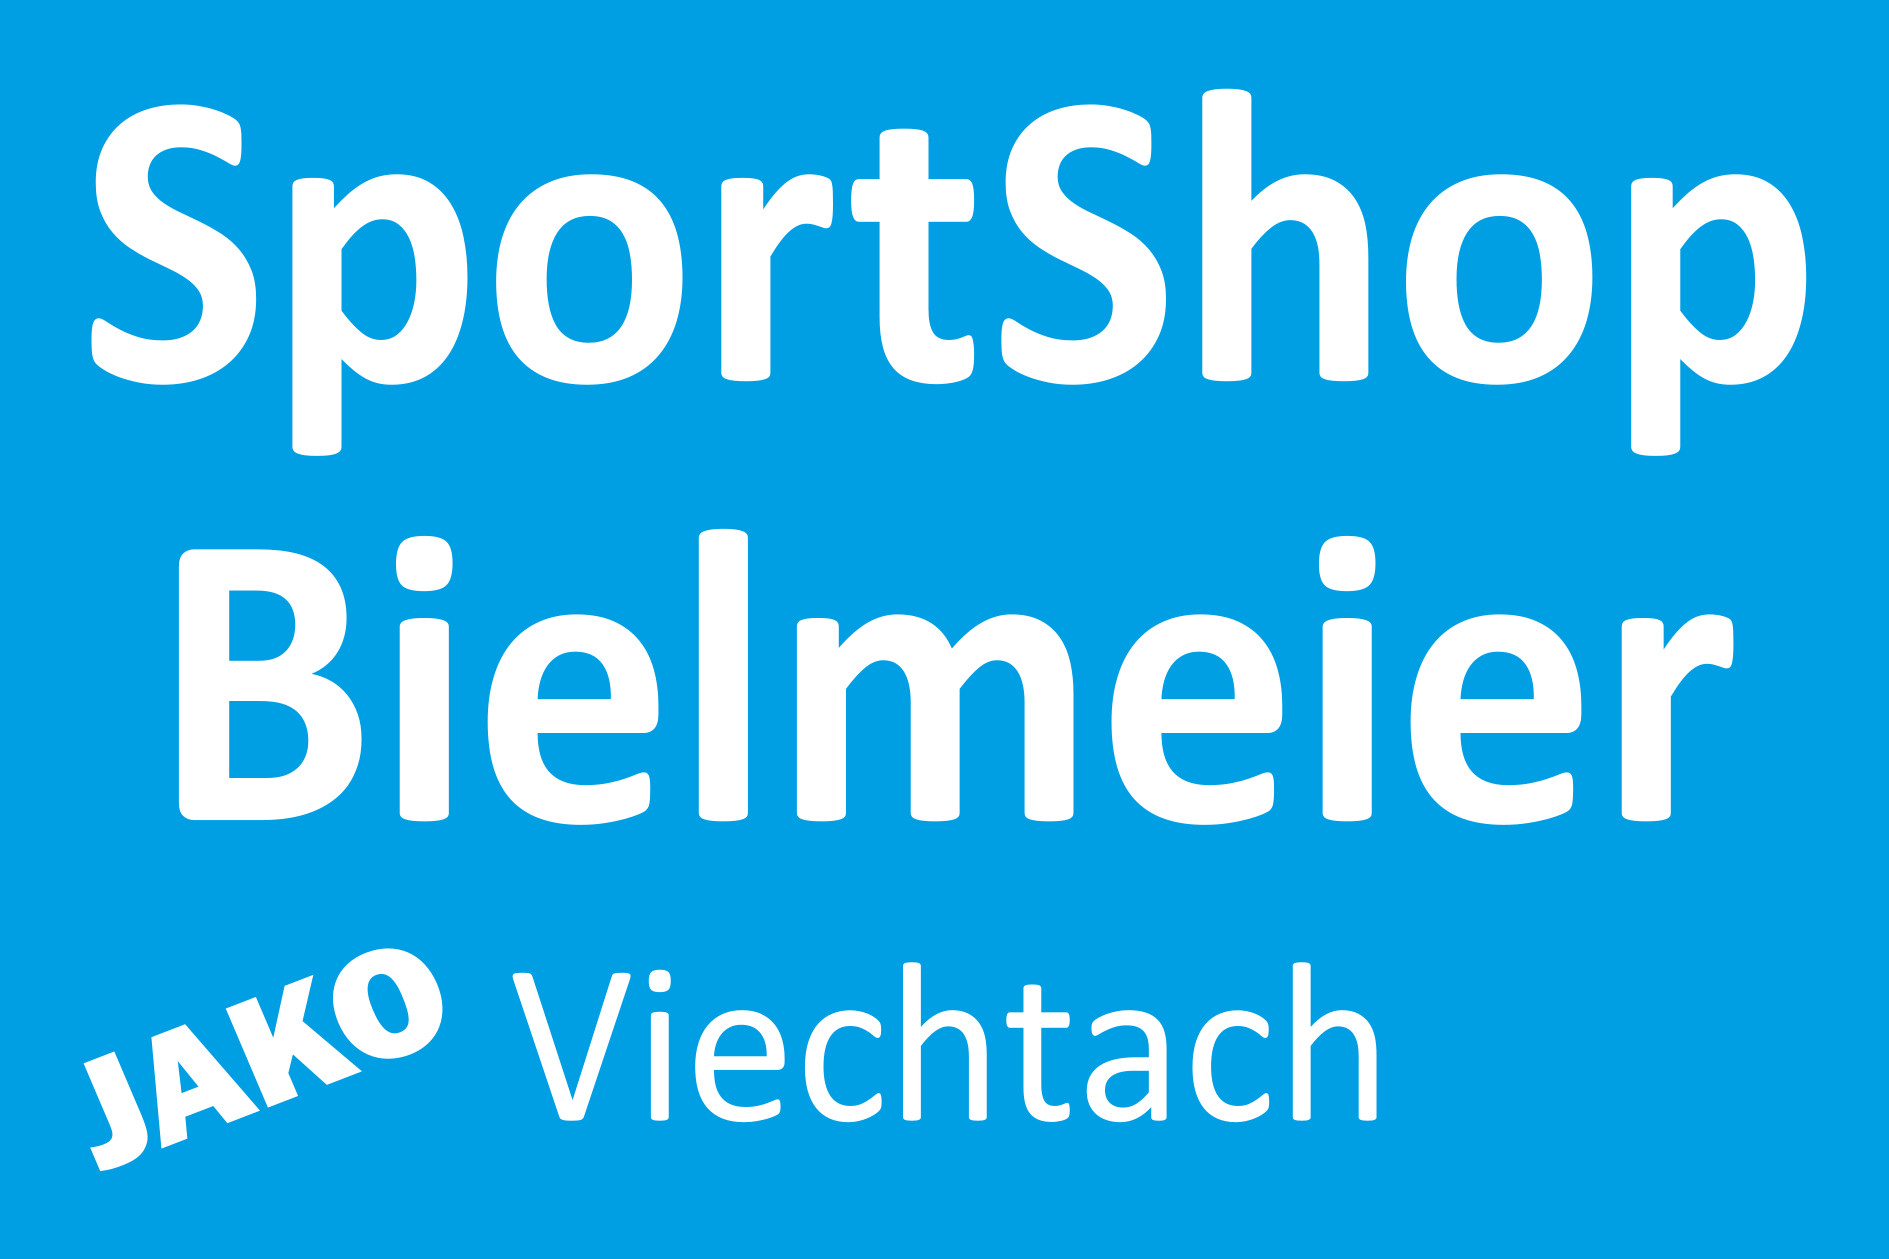 Sportshop Bielmeier